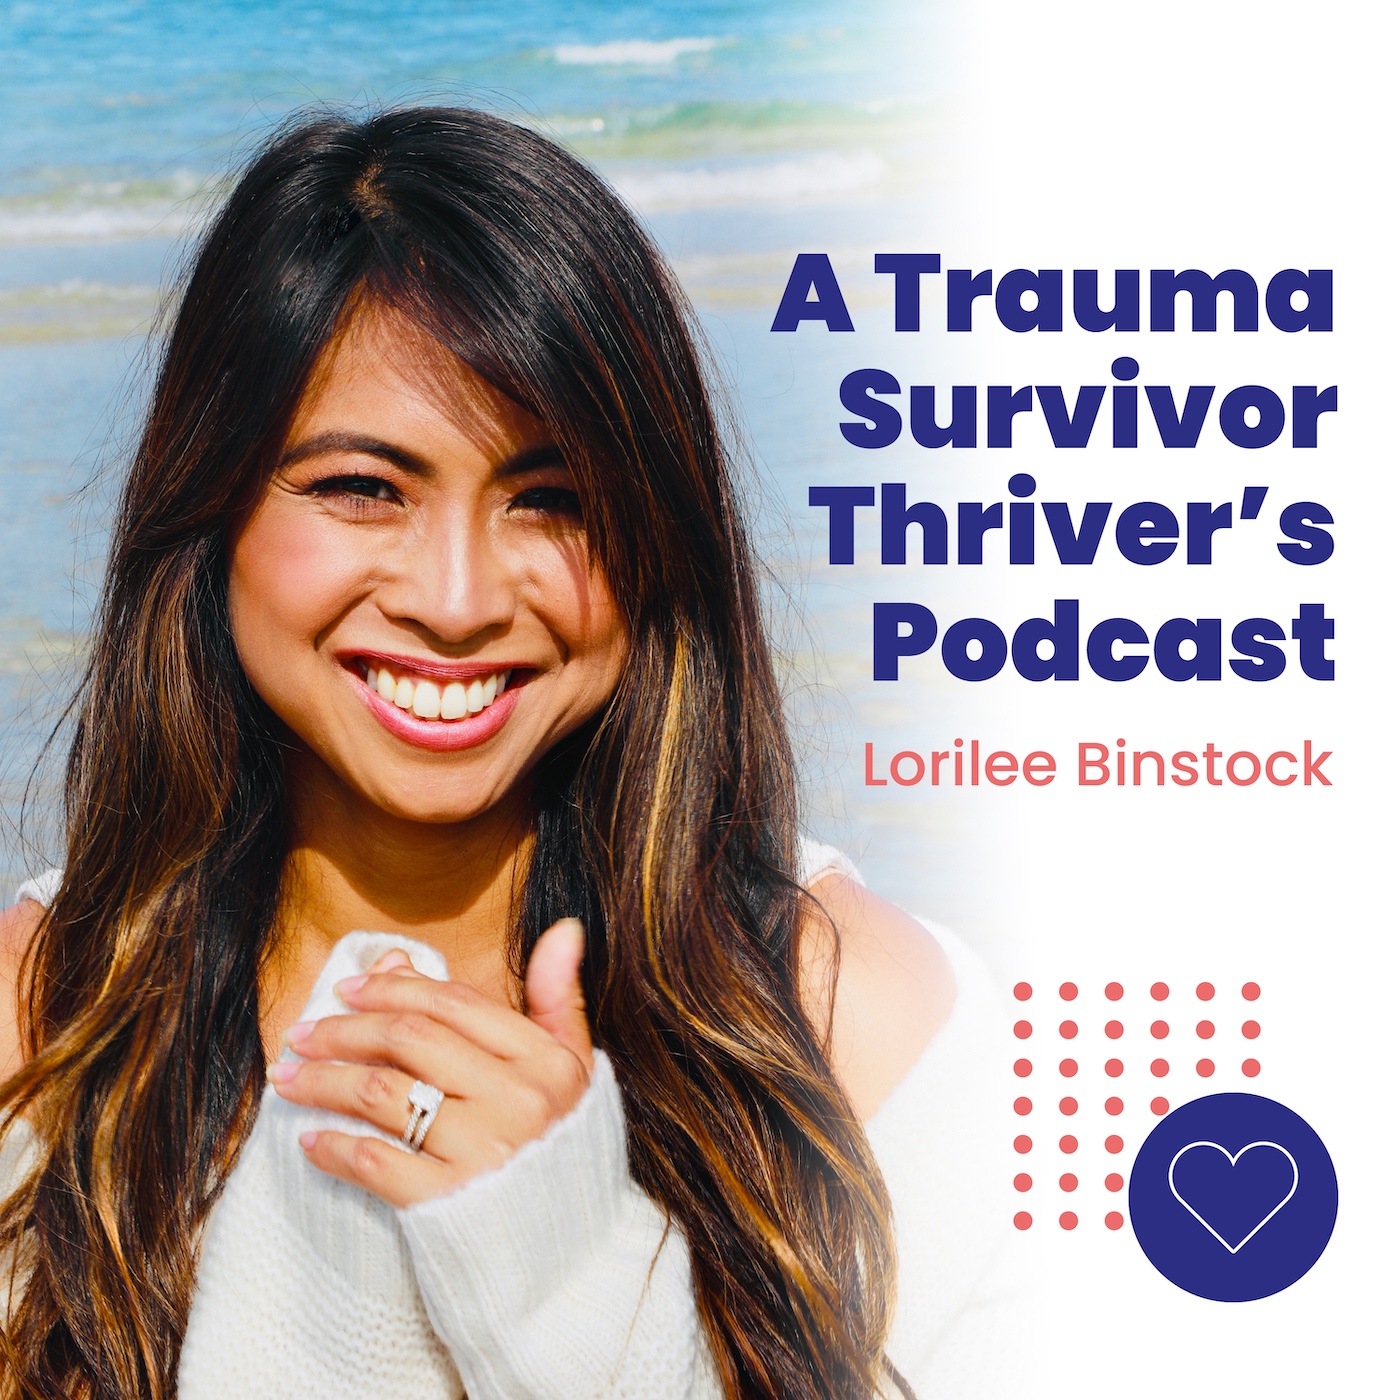 A Trauma Survivor Thriver's Podcast